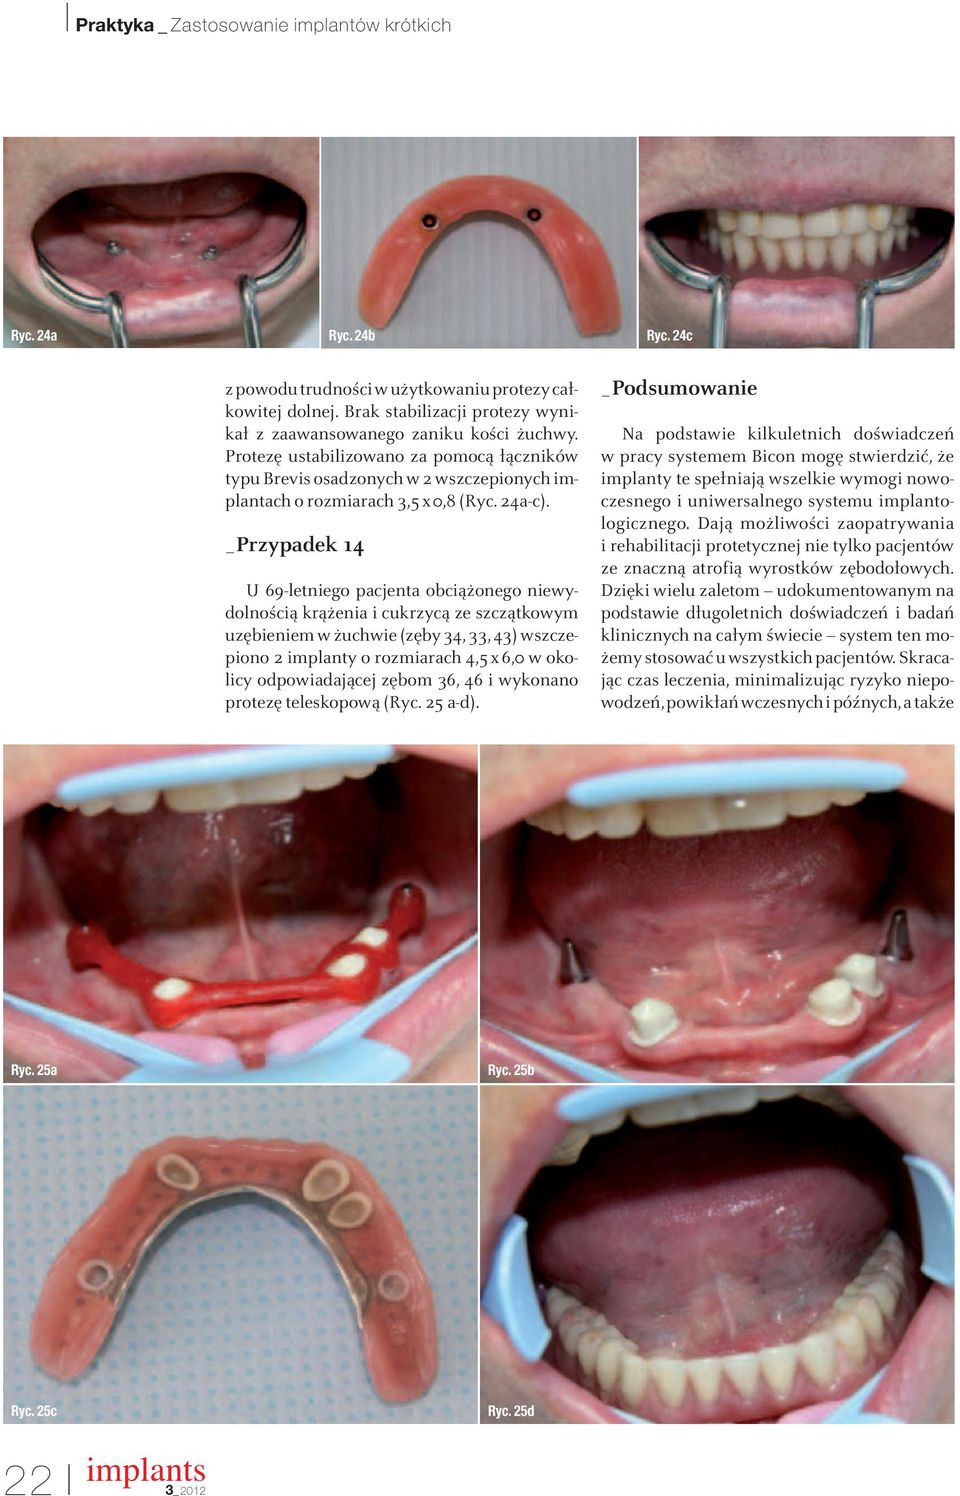 _Przypadek 14 U 69-letniego pacjenta obciążonego niewydolnością krążenia i cukrzycą ze szczątkowym uzębieniem w żuchwie (zęby 34, 33, 43) wszczepiono 2 implanty o rozmiarach 4,5x6,0 w okolicy